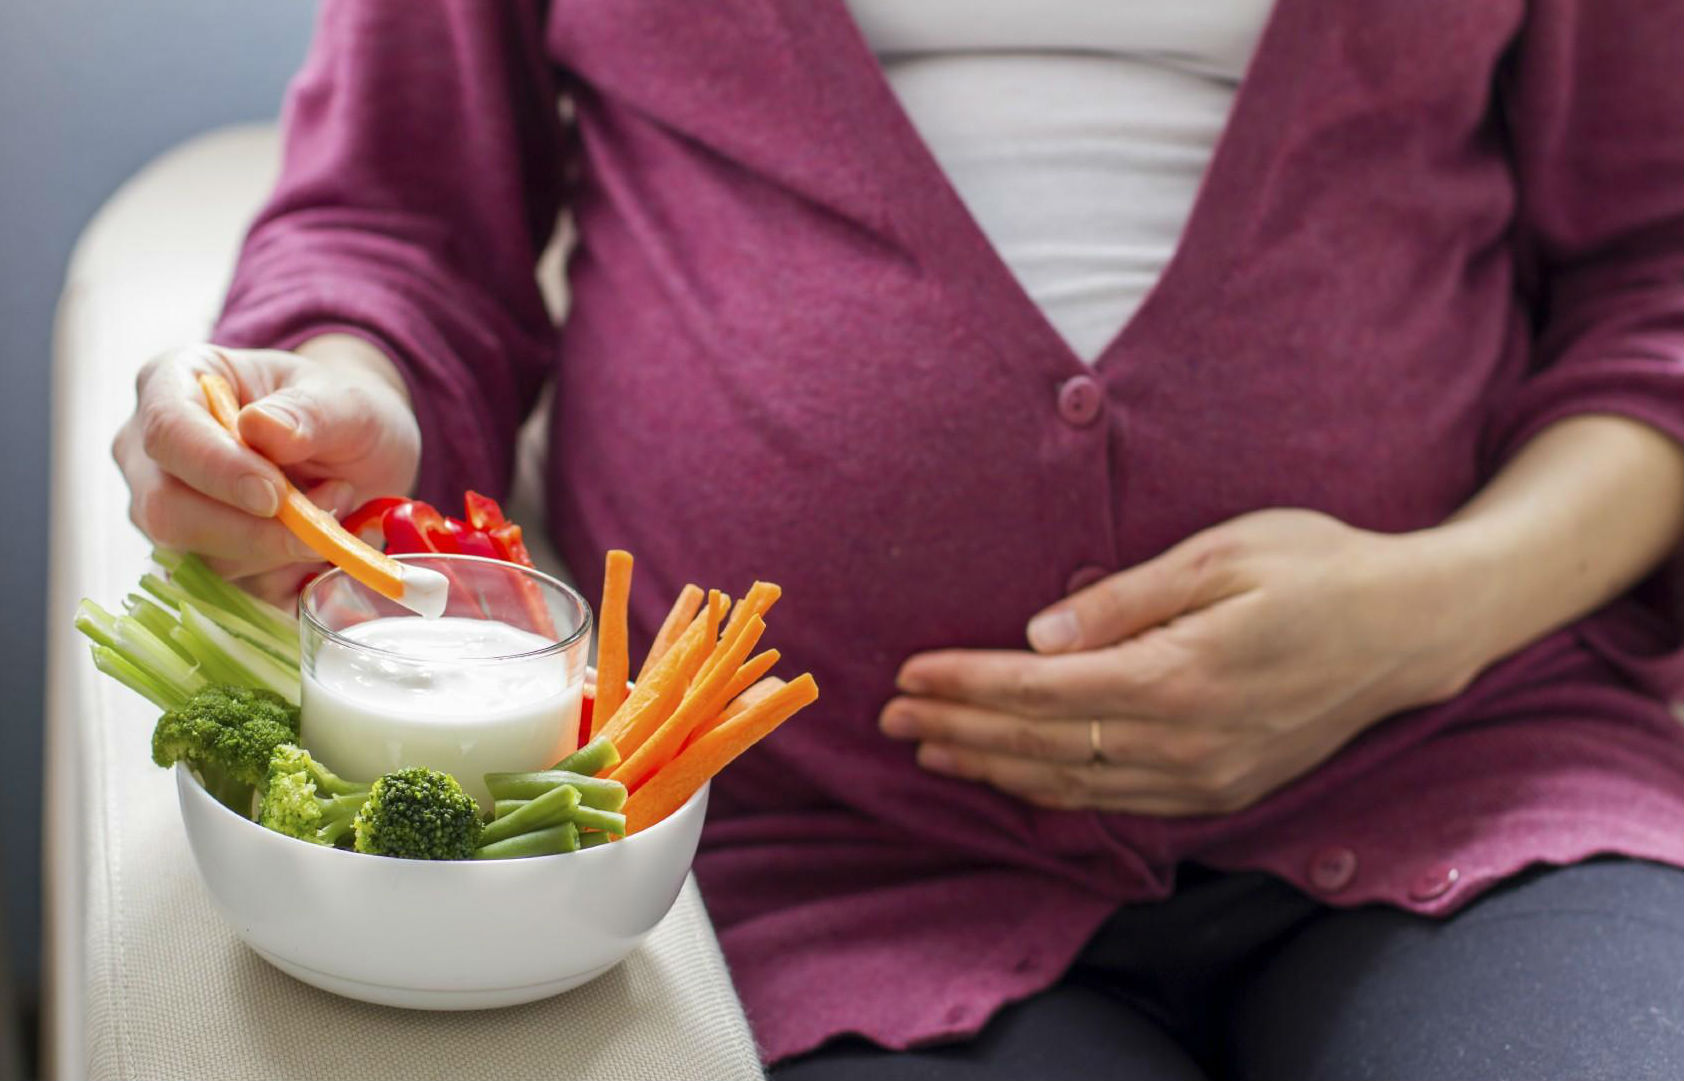 نکاتی در مورد تغذیه زنان باردار